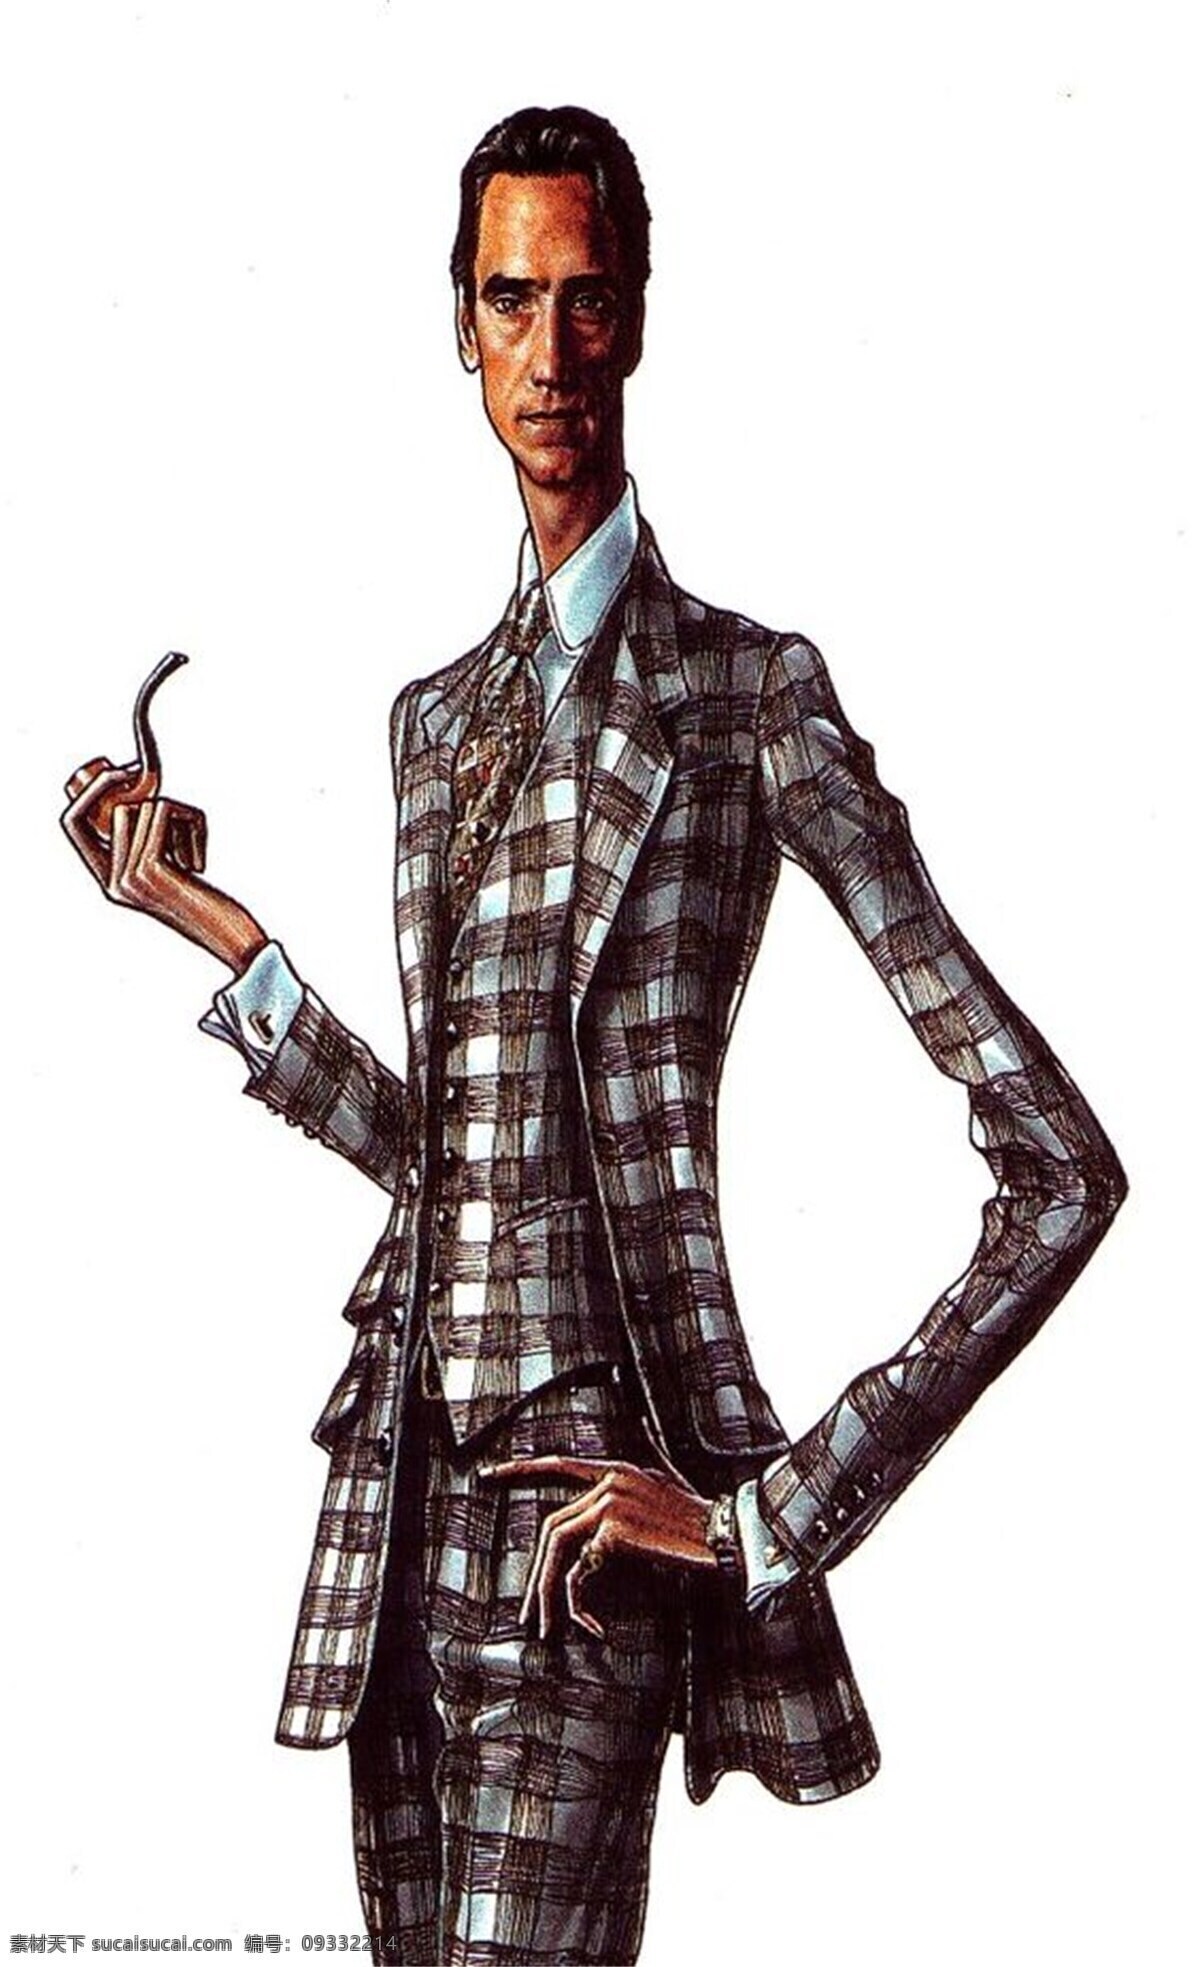 服装效果图 格子外套 格子西装 男装 西装外套 绅士 西装 三 件套 效果图